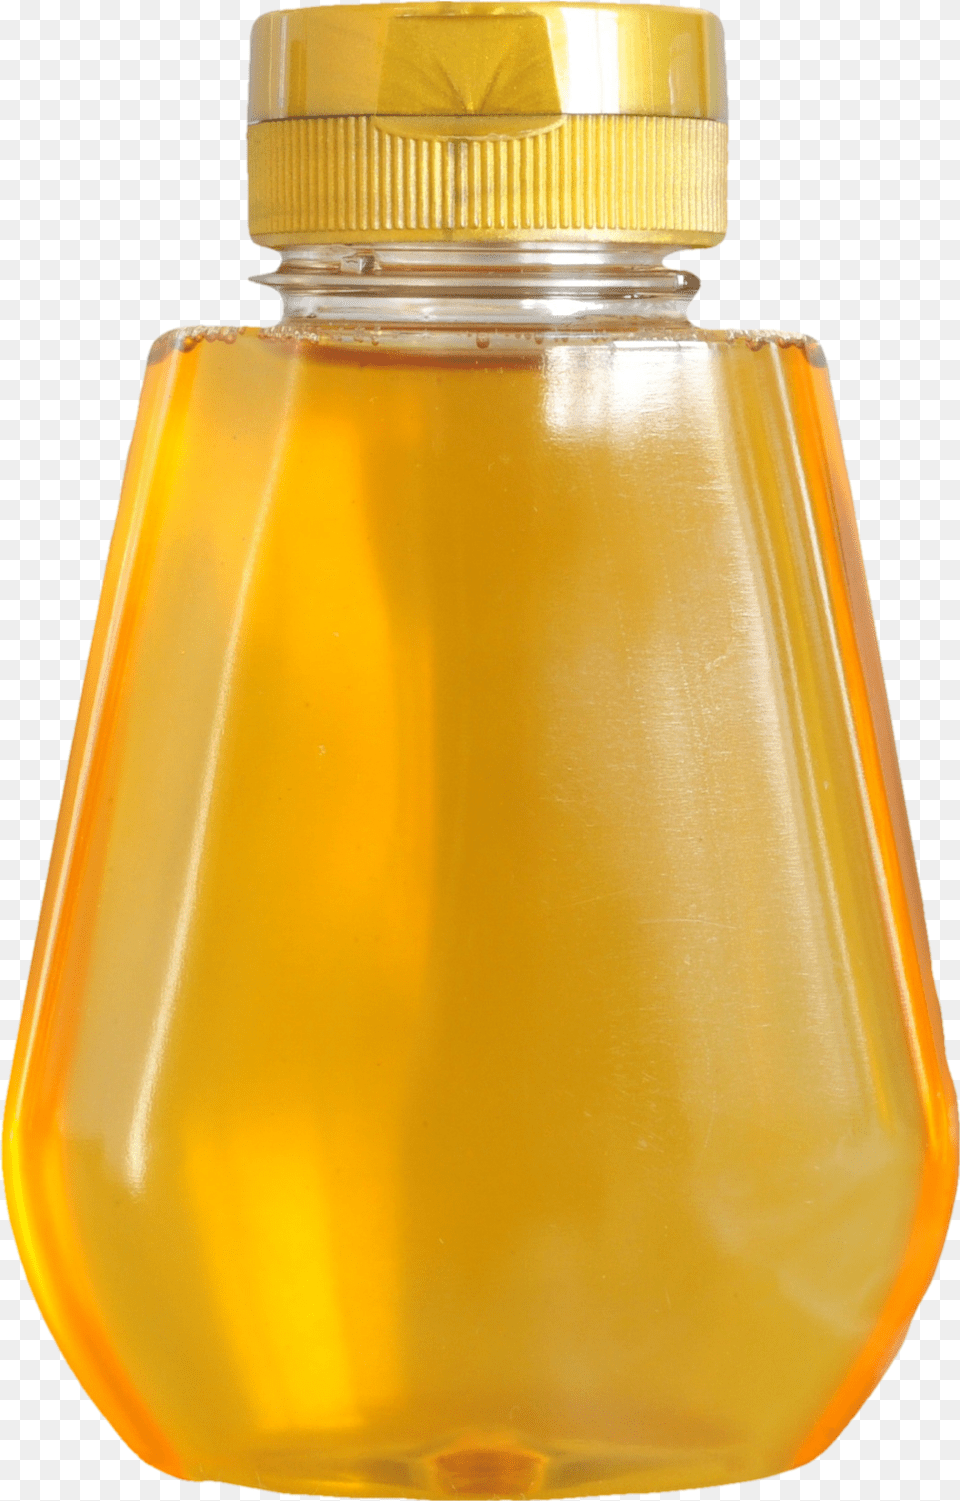 Karma Glass Bottle, Food, Honey, Jar, Shaker Free Png Download